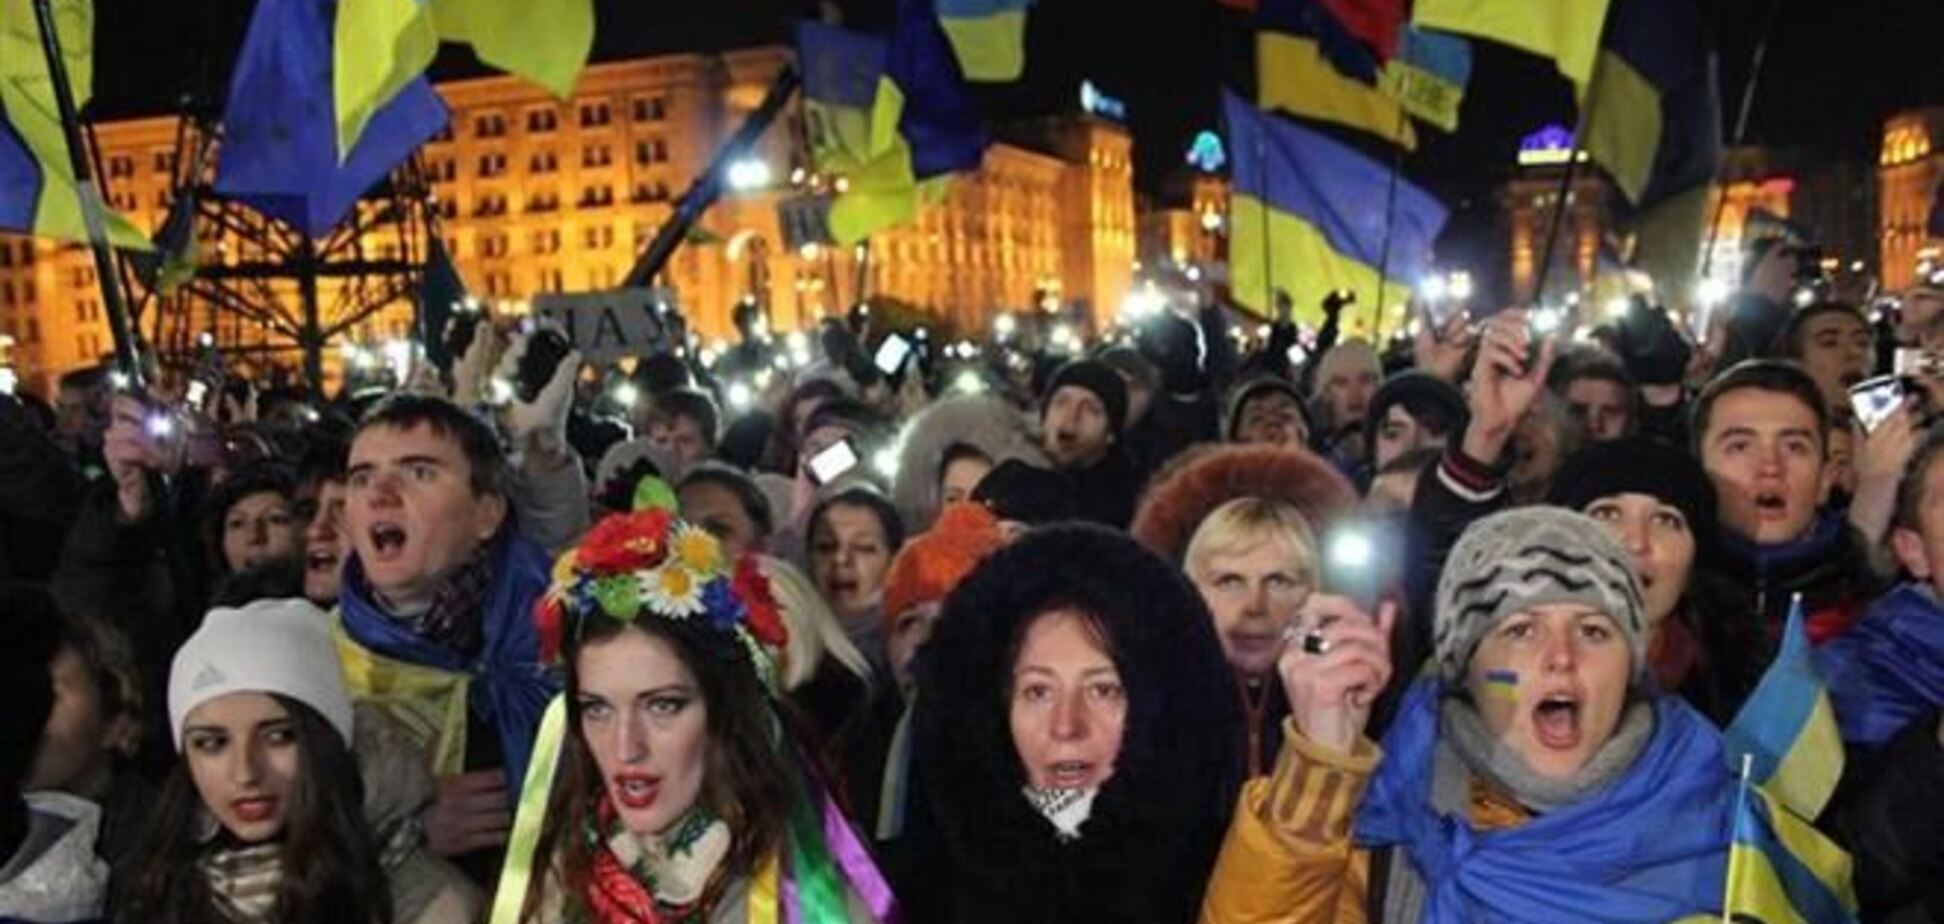 Евромайдан попробует попасть в Книгу рекордов Гиннесса в новогоднюю ночь